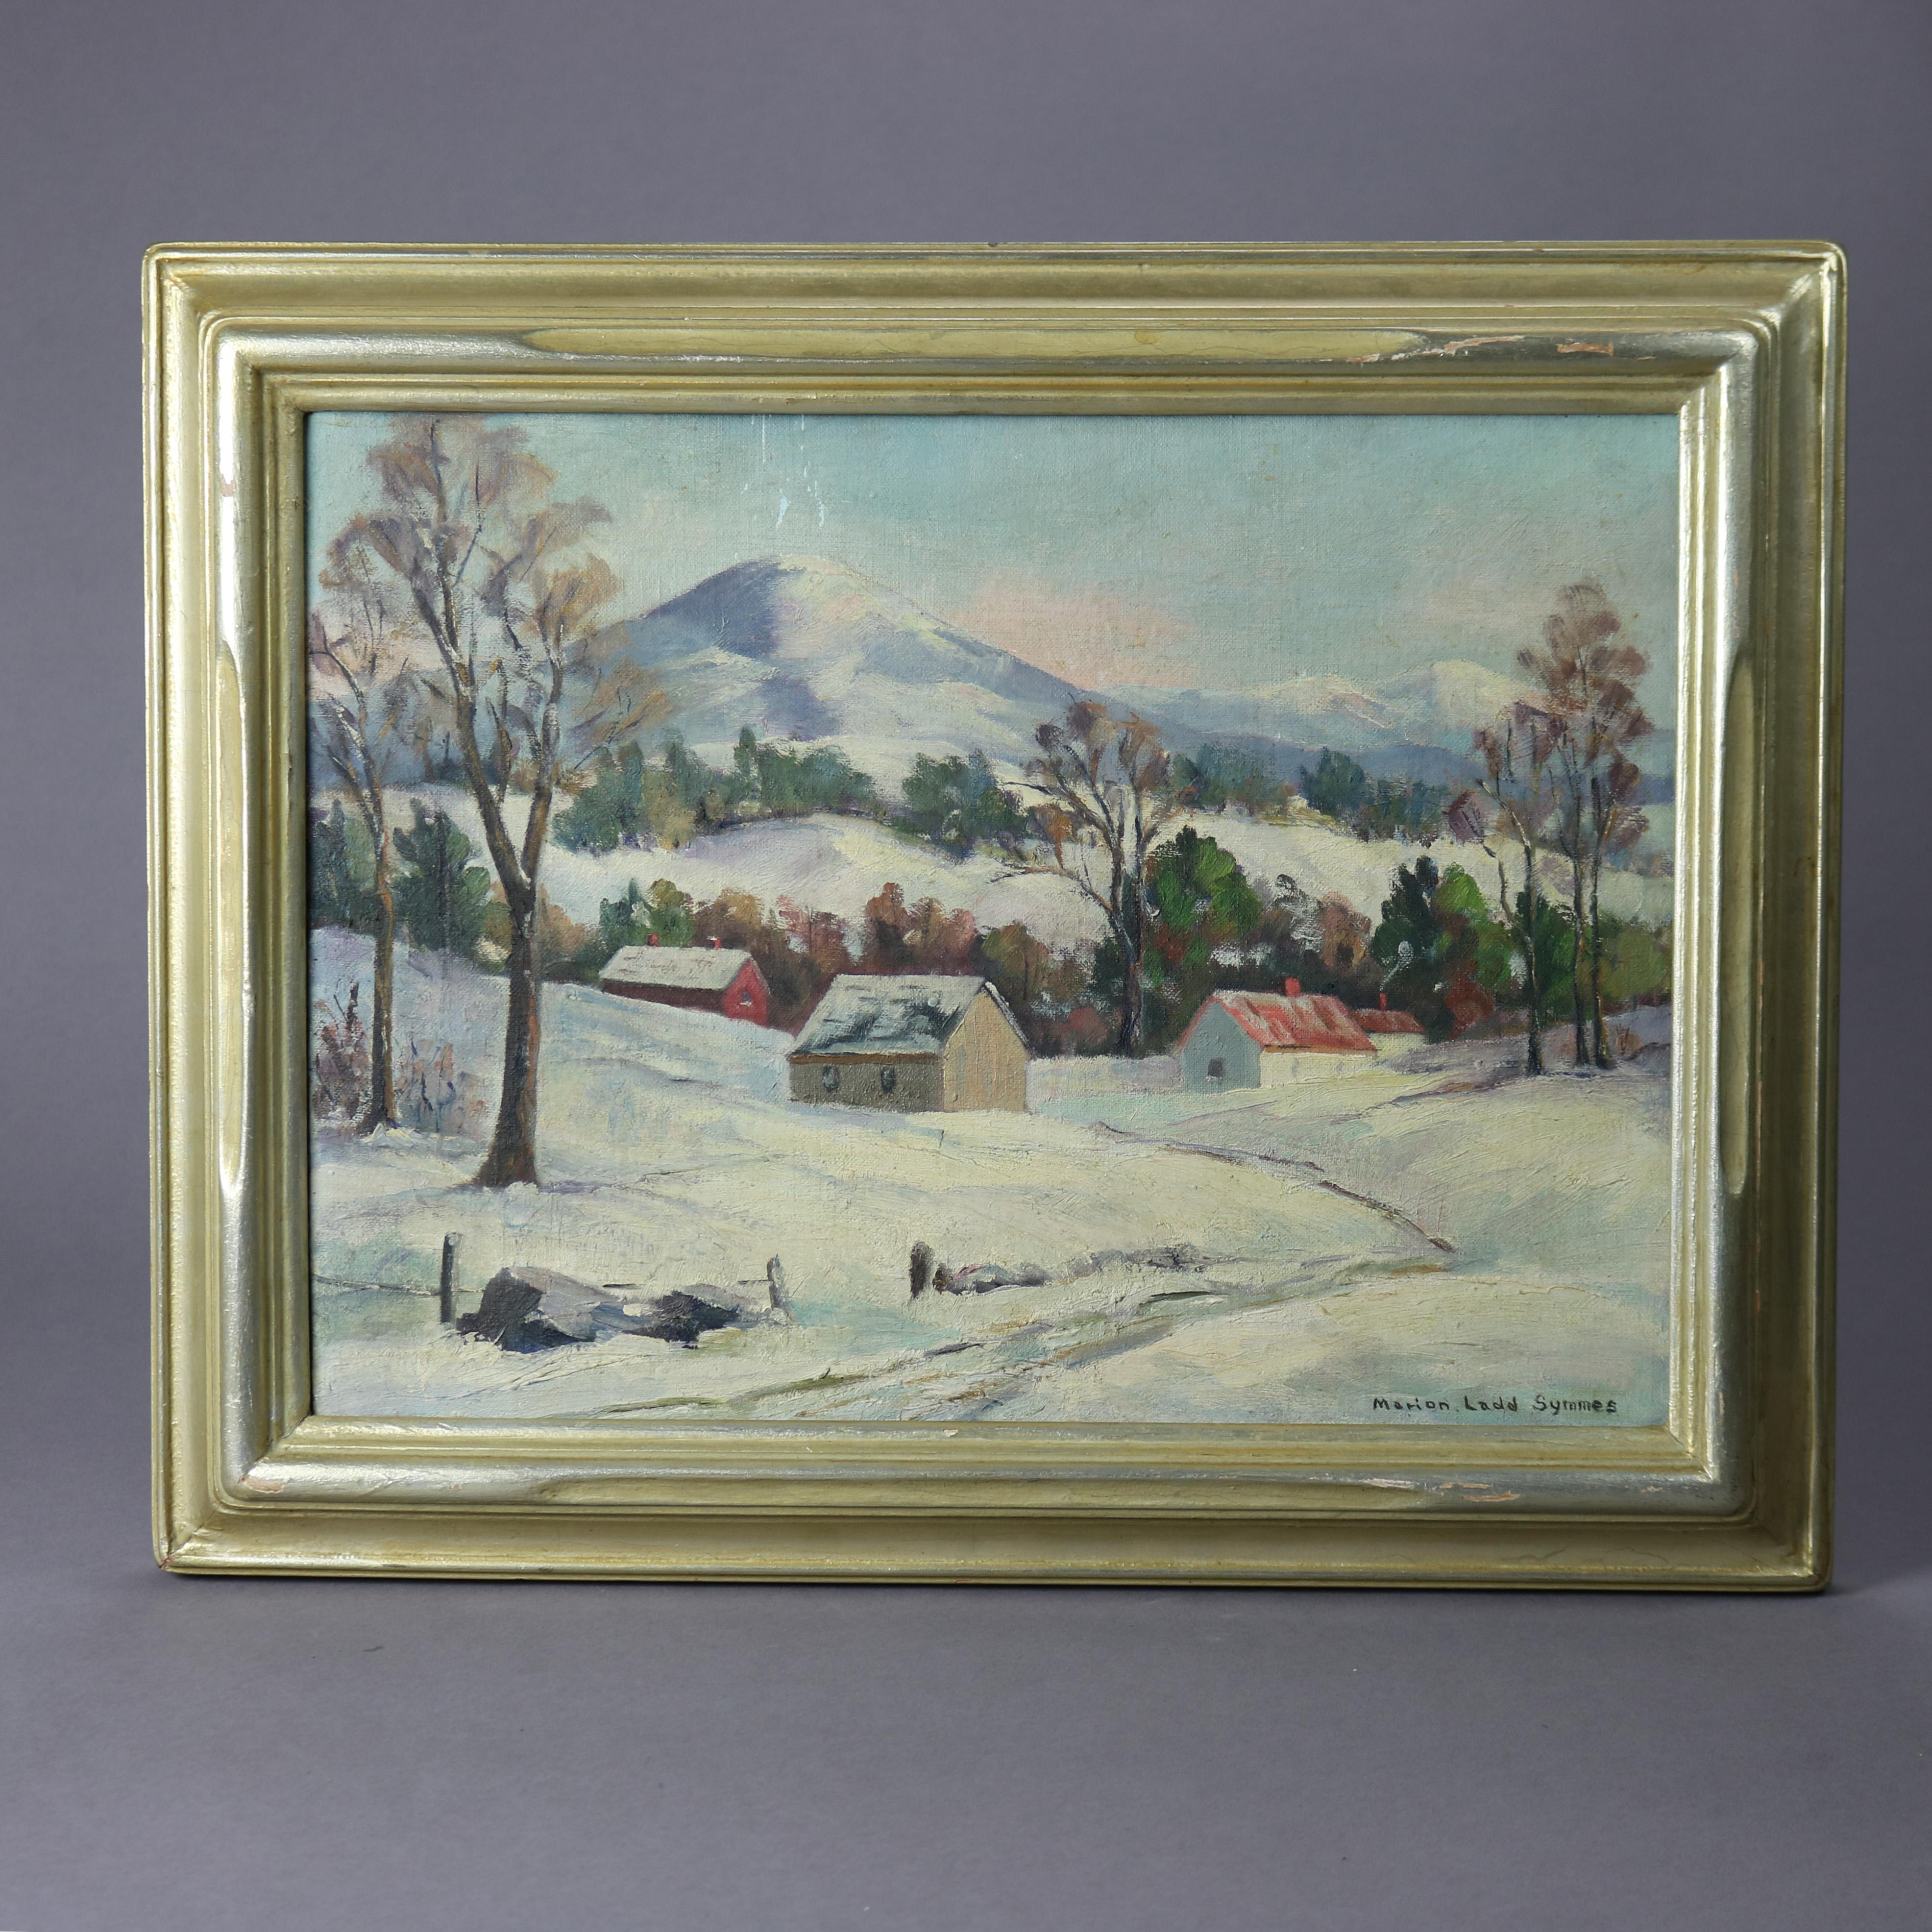 Eine antike Landschaft Malerei bietet Öl auf Karton Landschaftsszene in der Art der New Hope School mit dem Titel Mt. Antrim, NH, von Marion Ladd Symmes unterzeichnet, sitzt in Goldholz Rahmen, um 1910

Maße - 15,25 